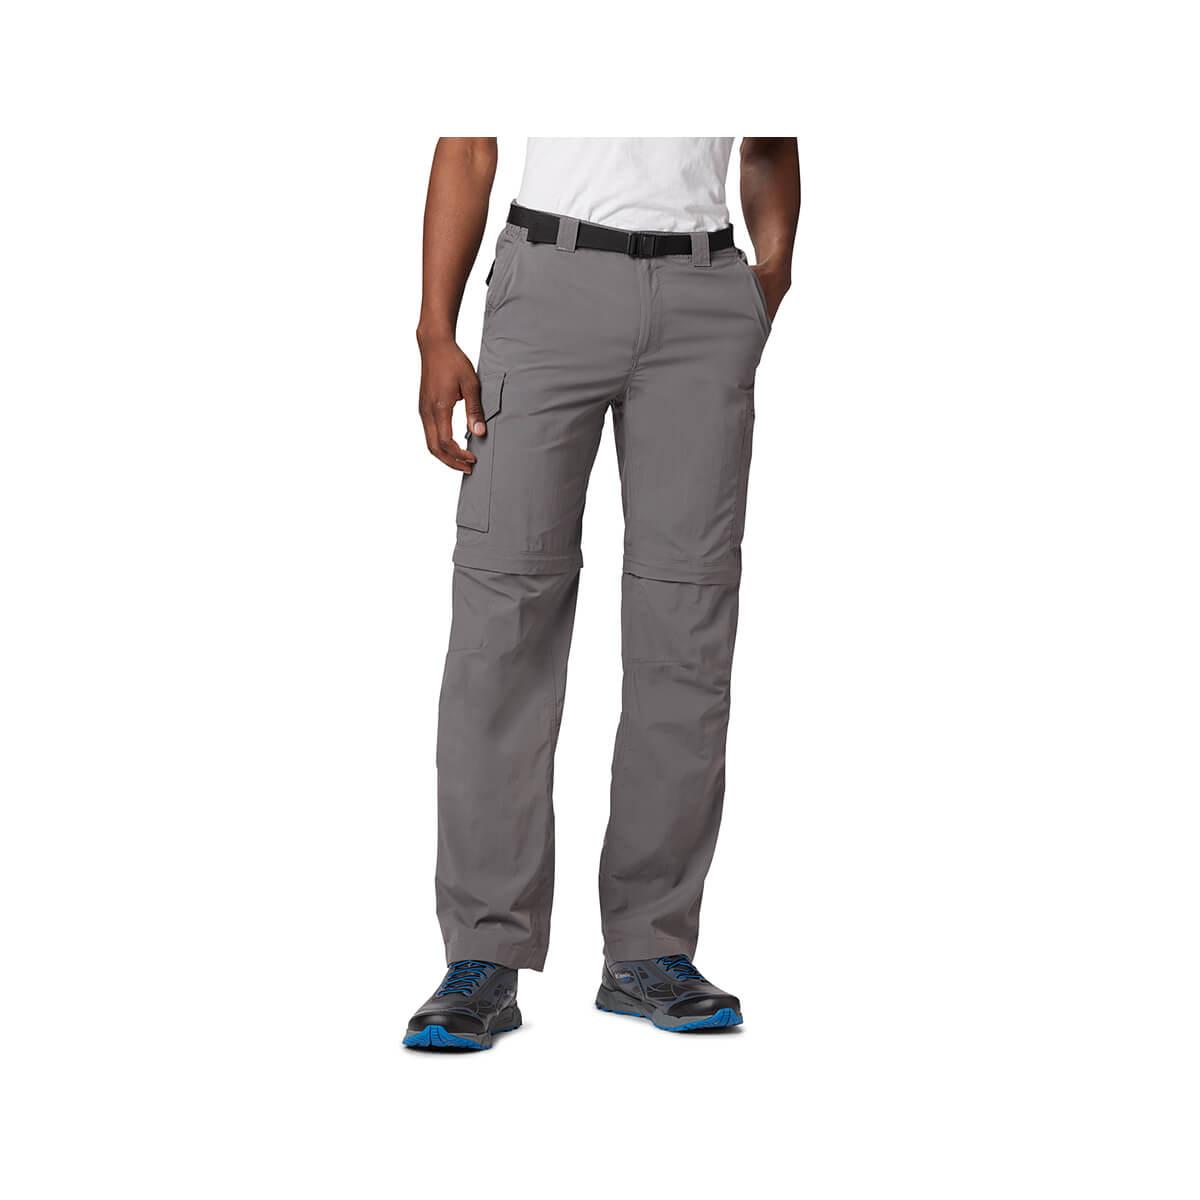  Men's Silver Ridge Convertible Pants